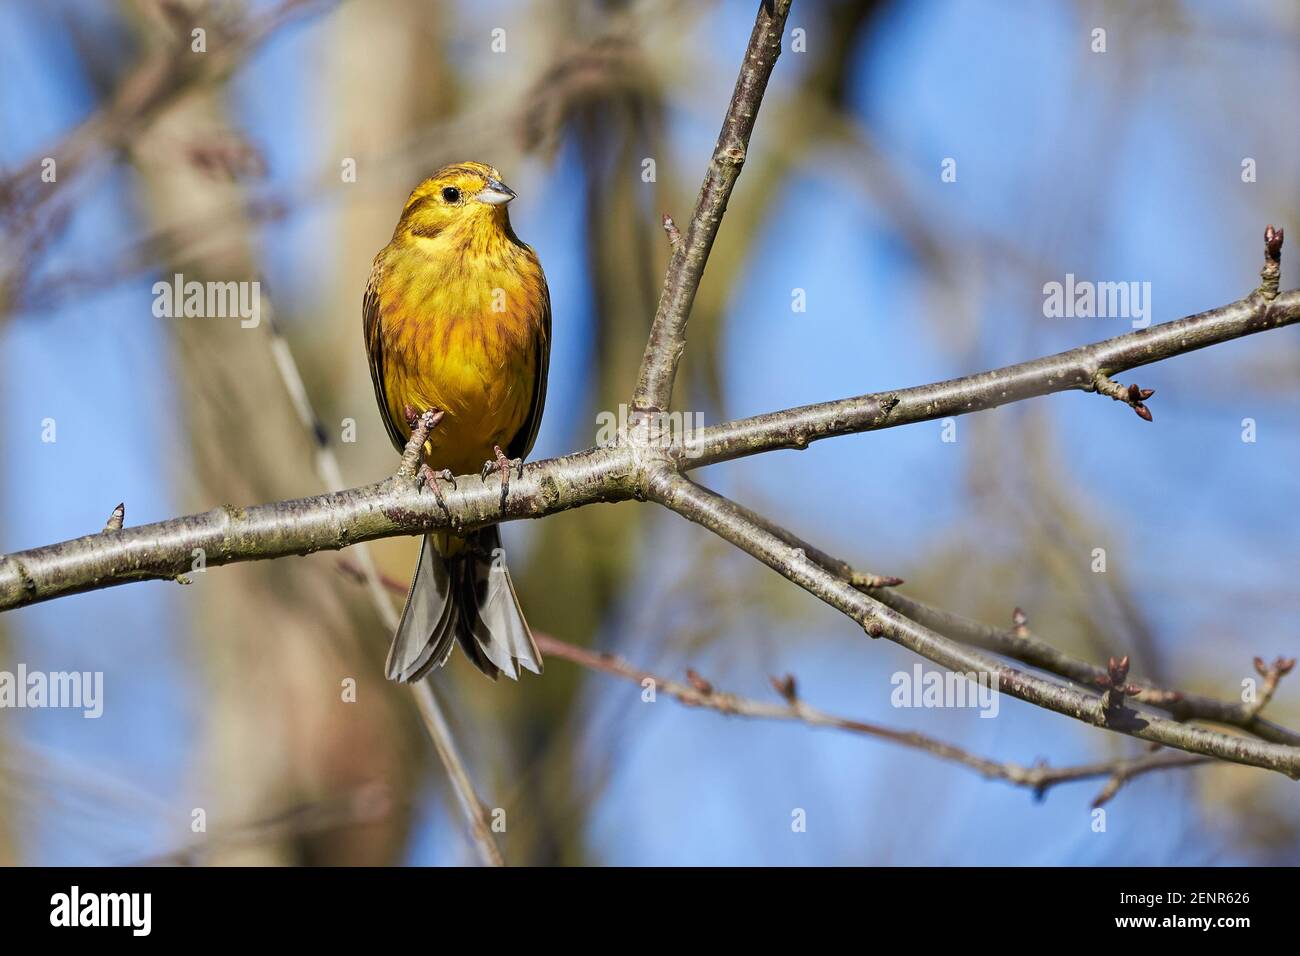 Yellowhammer (Emberiza citrinella) Beautiful bird sitting on a branch, close-up Stock Photo